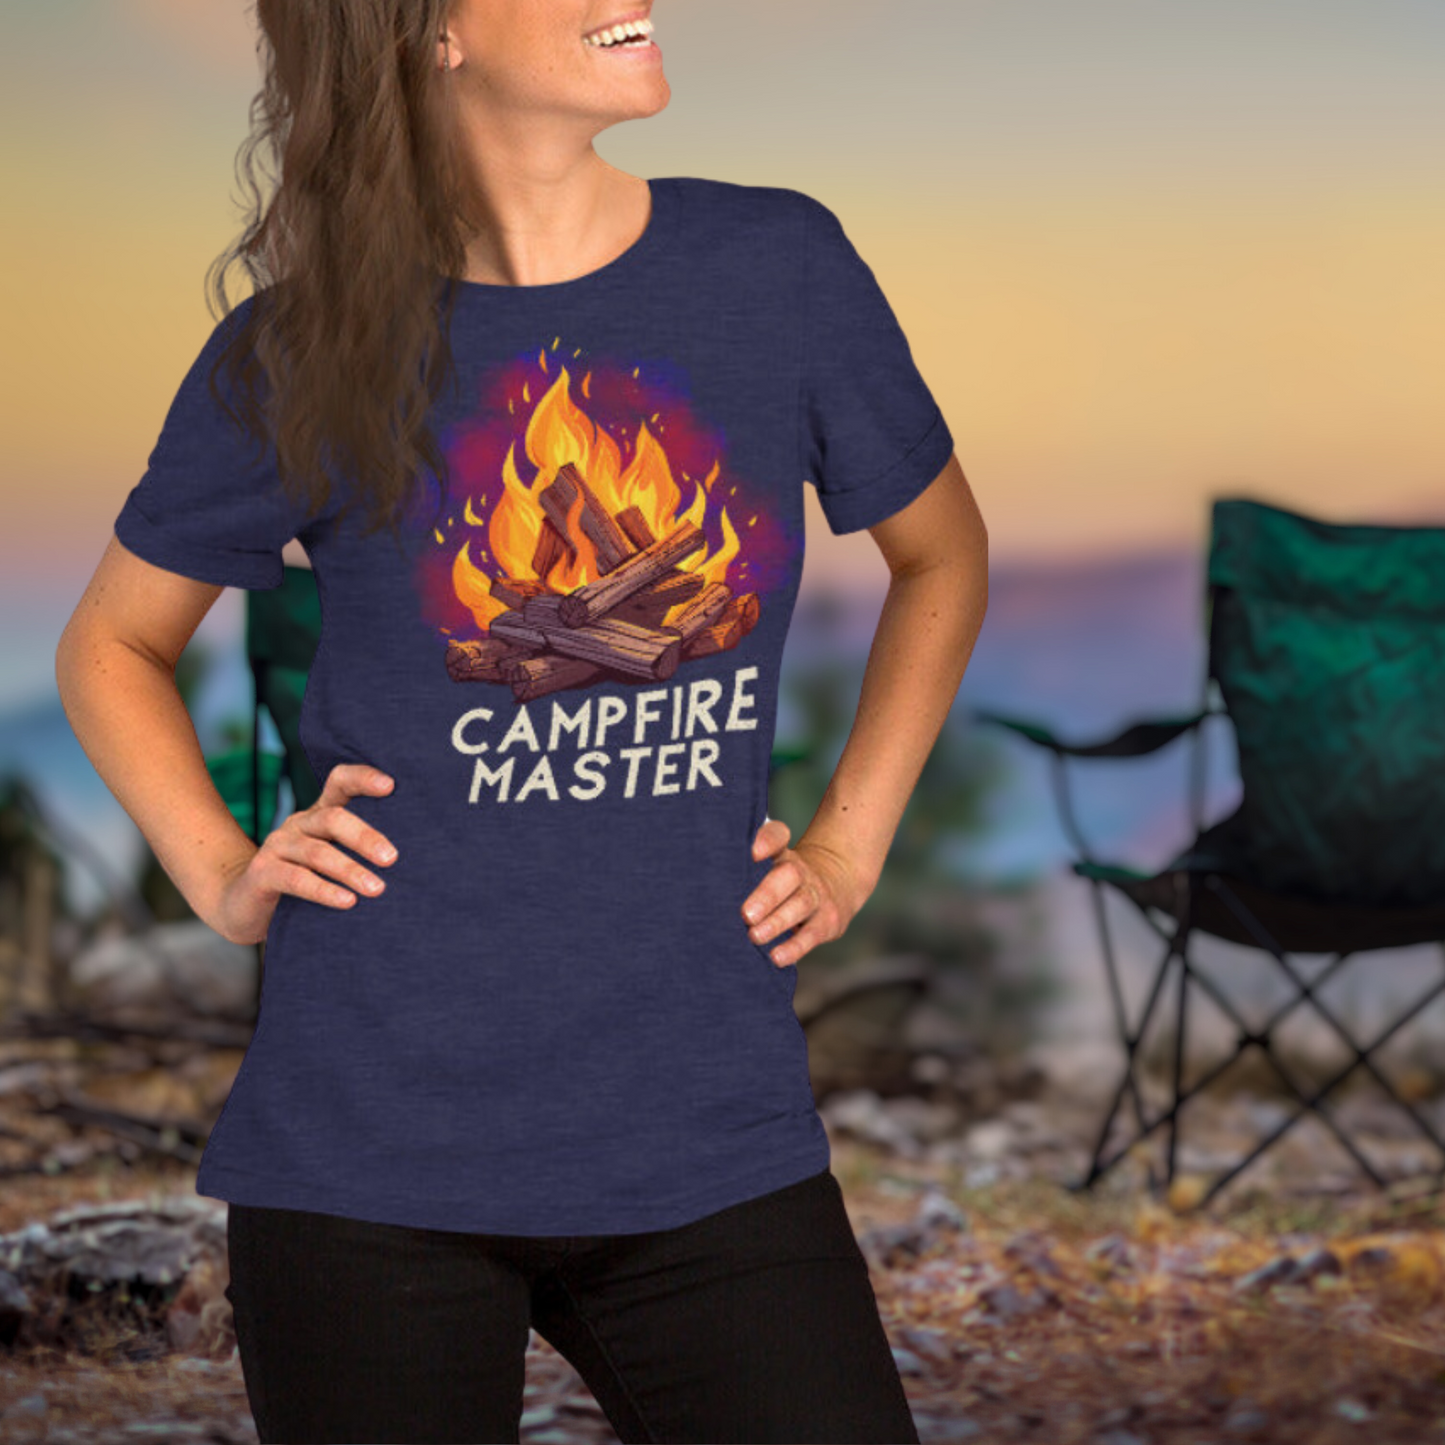 Campfire Master | Outdoorsy Camping T-shirt